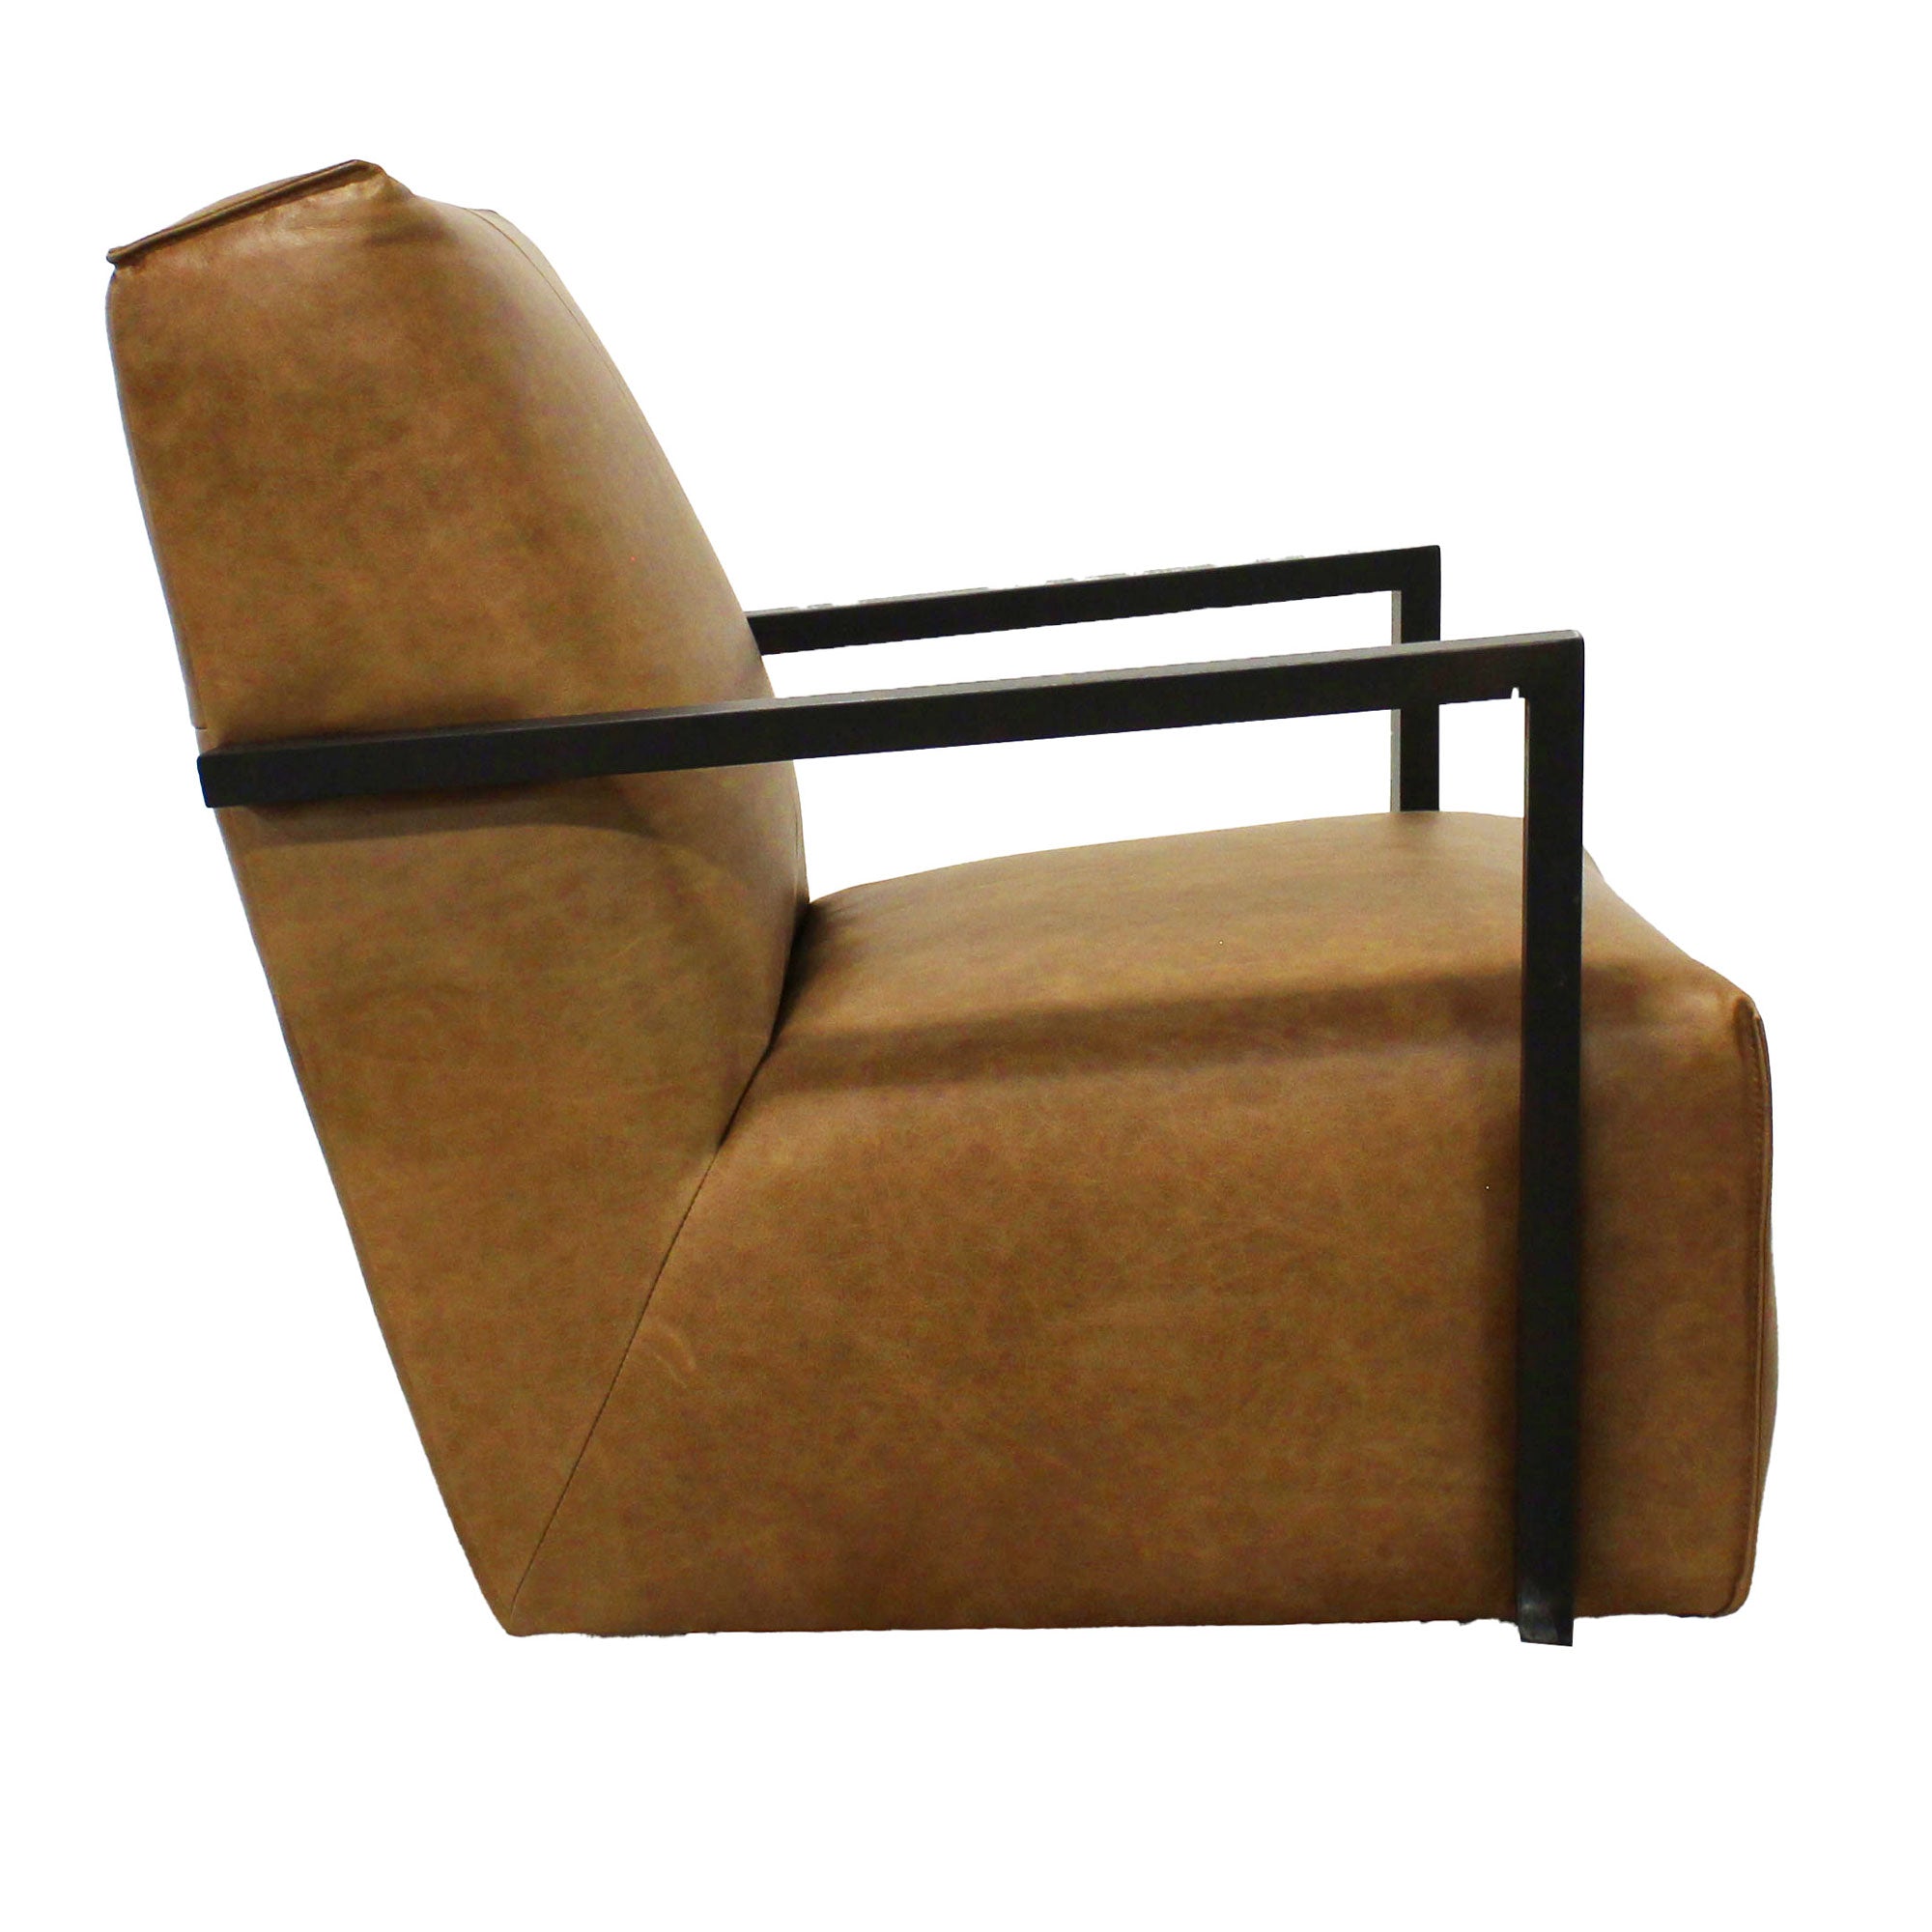 Meris Chair